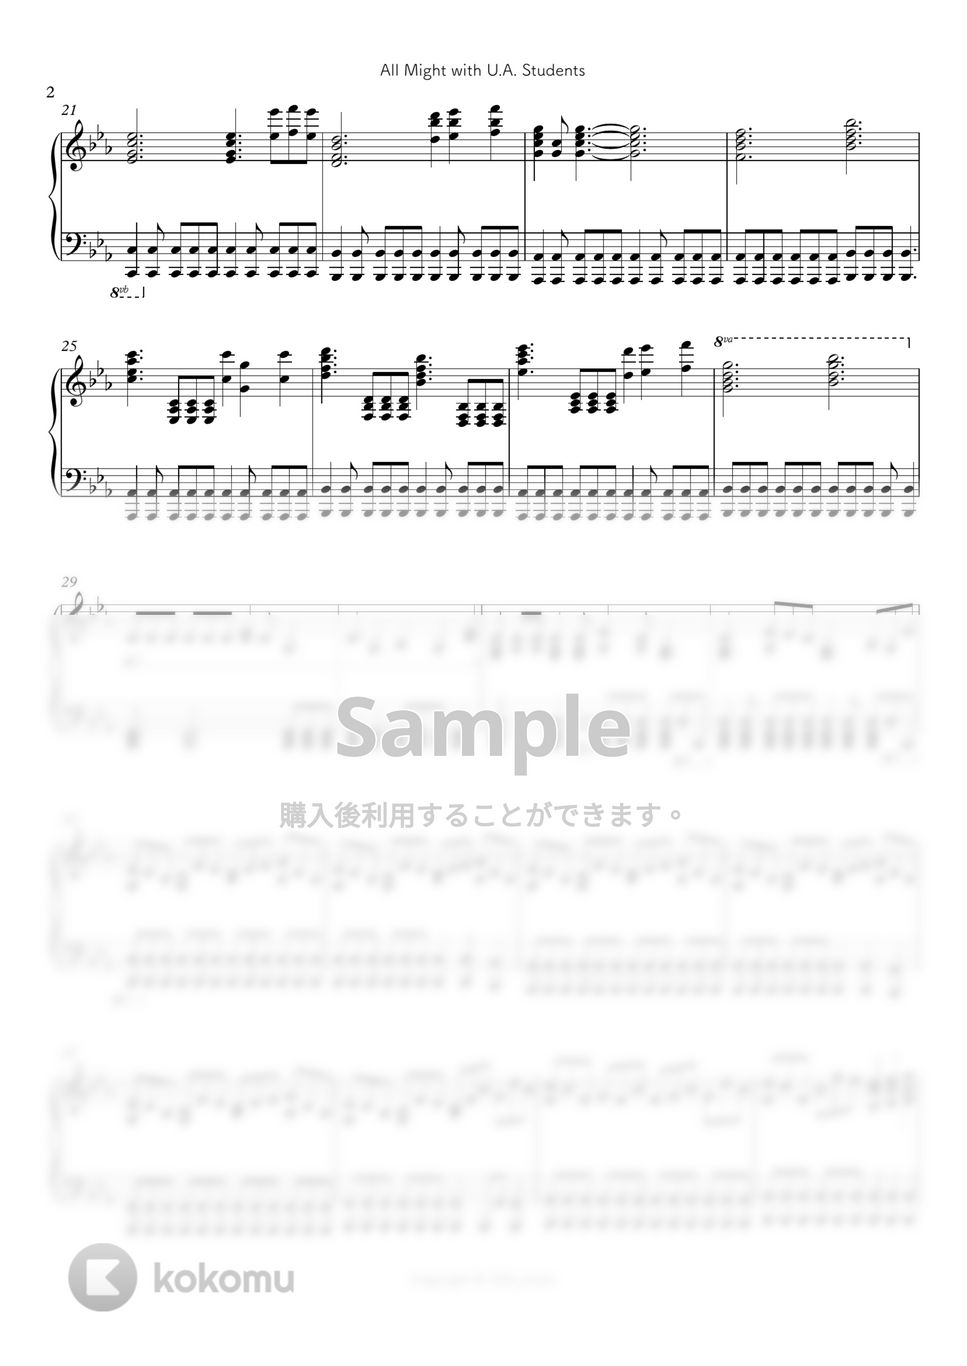 僕のヒーローアカデミア - All Might with U.A. Students(United States of Smash!) by シビウォルピアノ